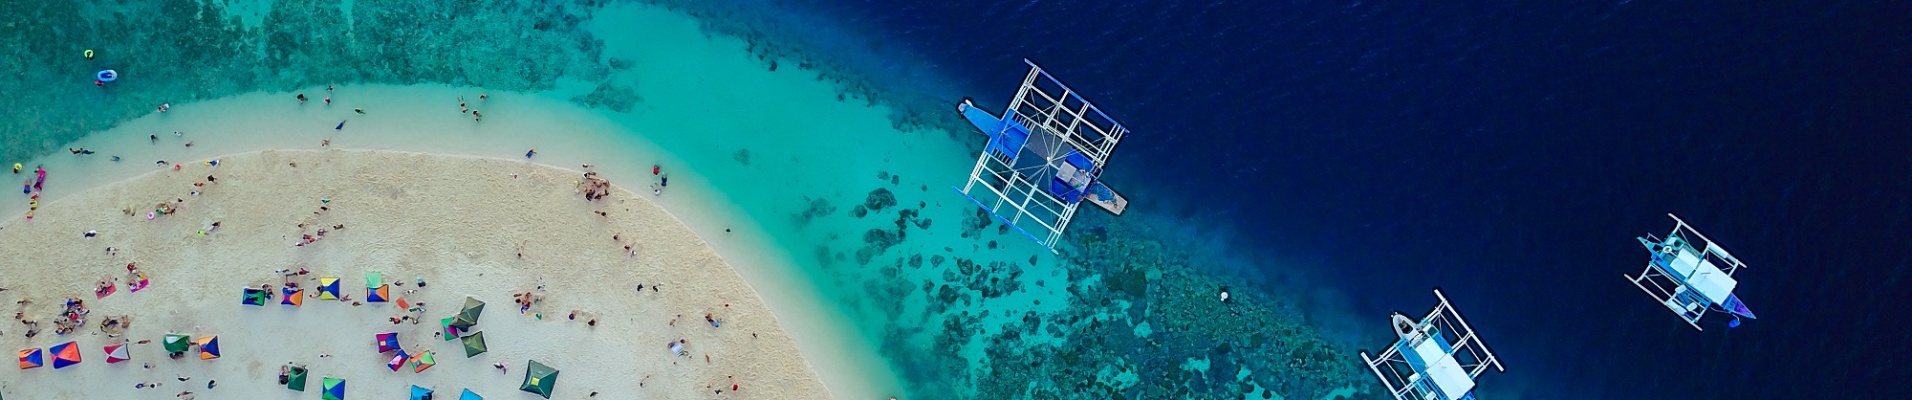 vue aérienne sur une plage des Philippines